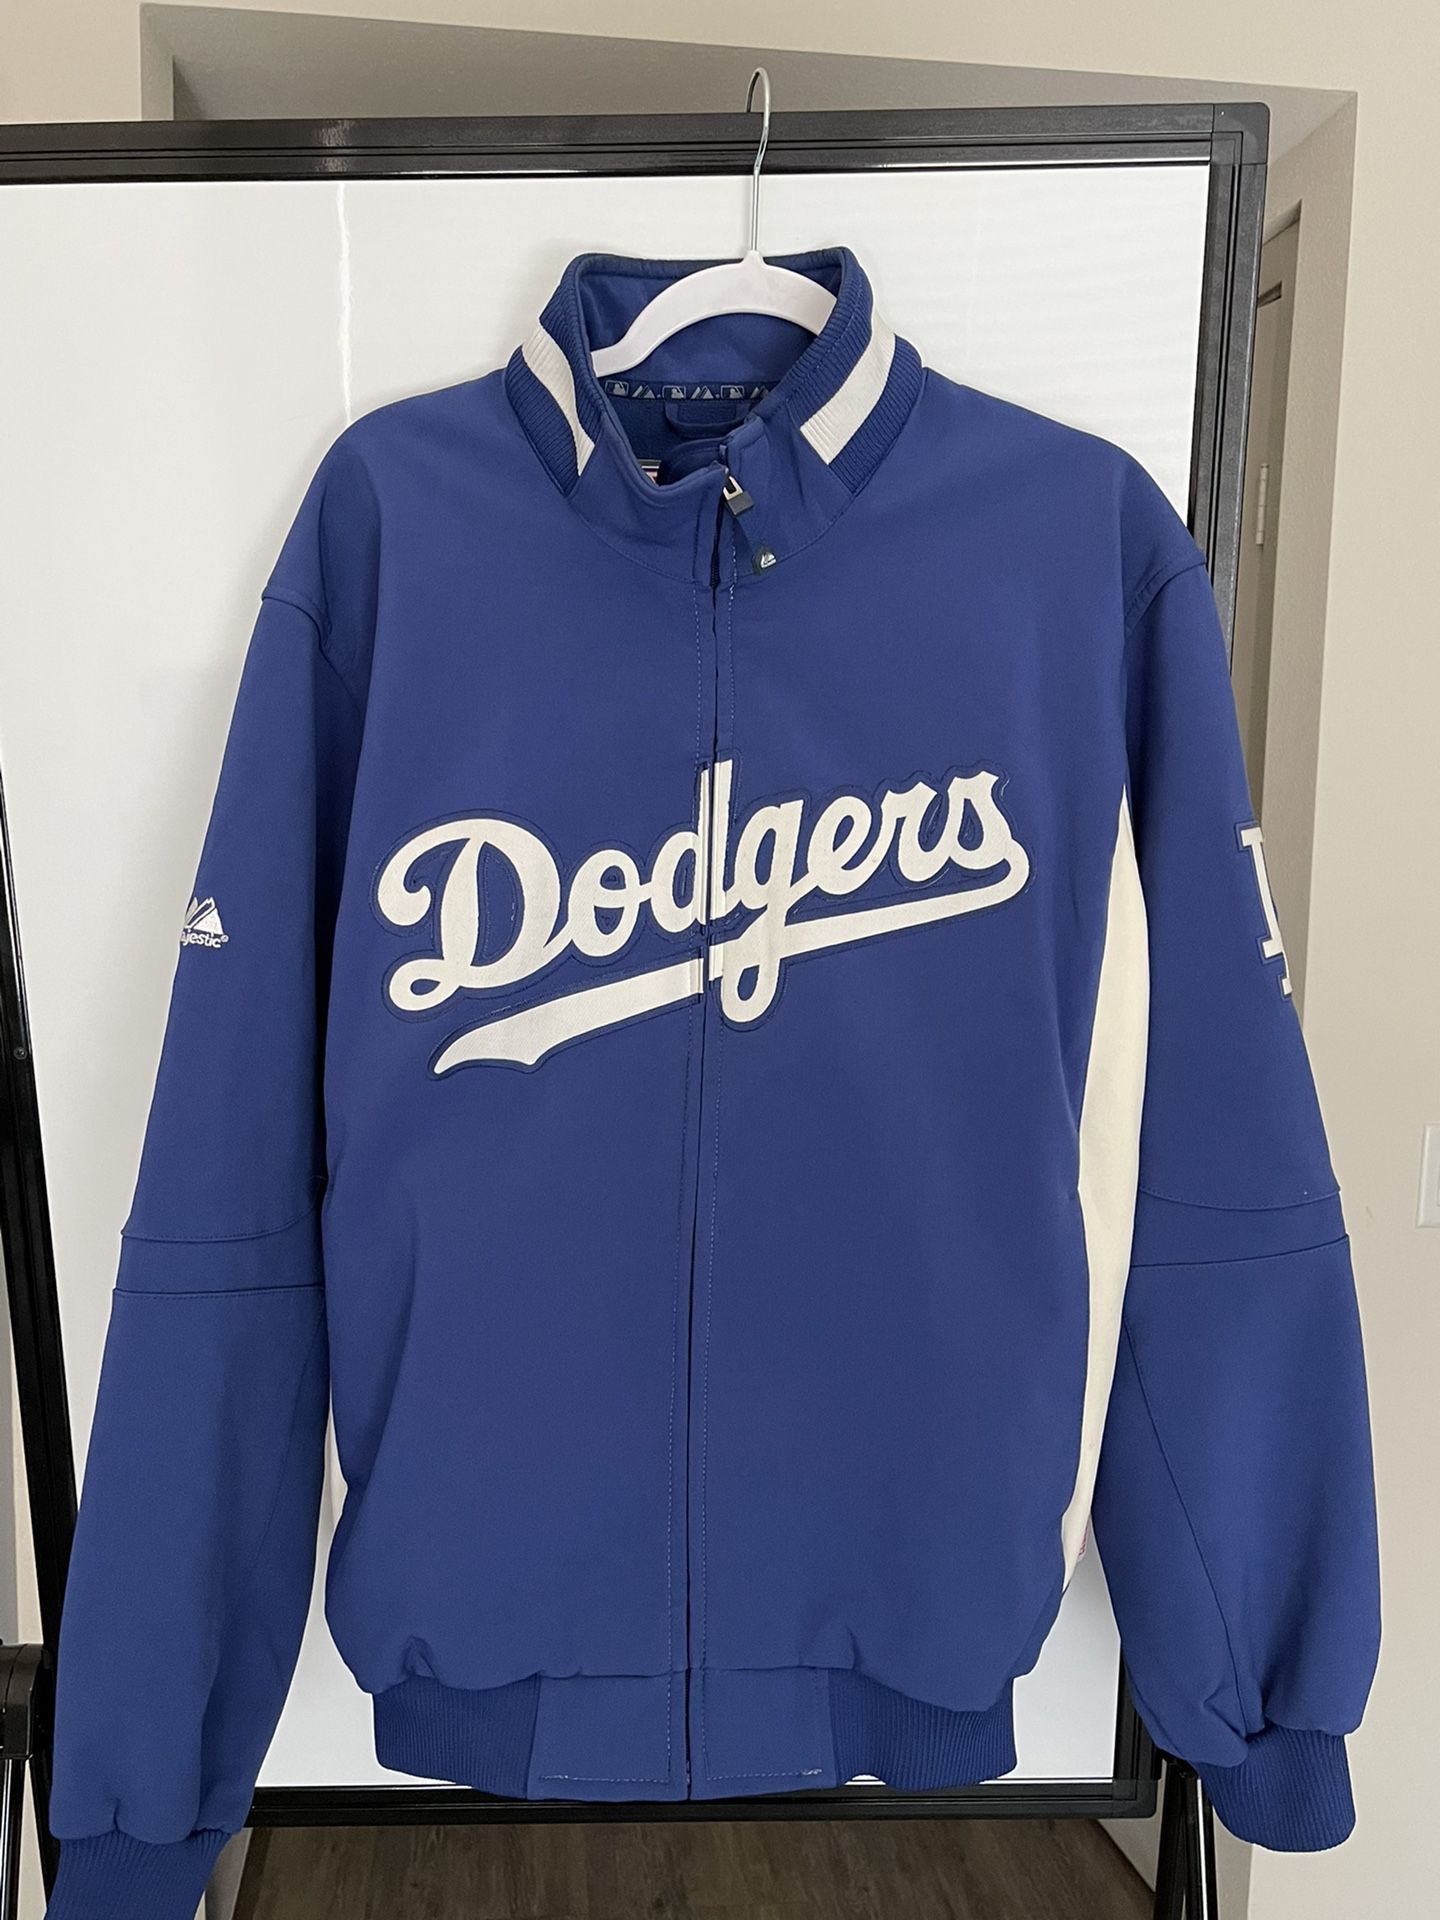 Ralph Lauren Dodgers Bomber Jacket (Small) for Sale in Irvine, CA - OfferUp